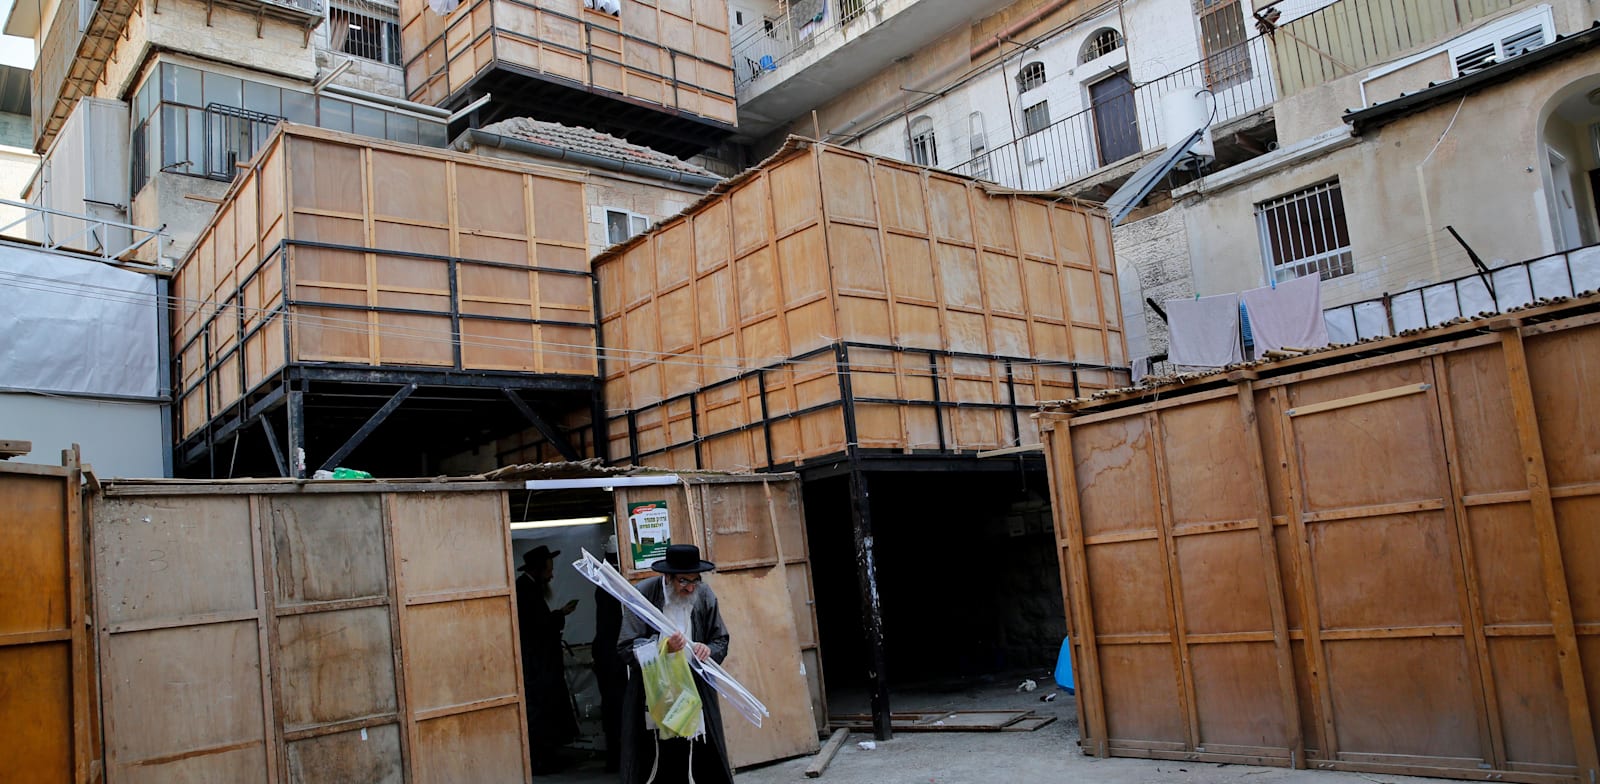 סוכות בירושלים. התעשייה סביב בנייתן מתחילה כבר באלול / צילום: Shutterstock, א.ס.א.פ קריאייטיב